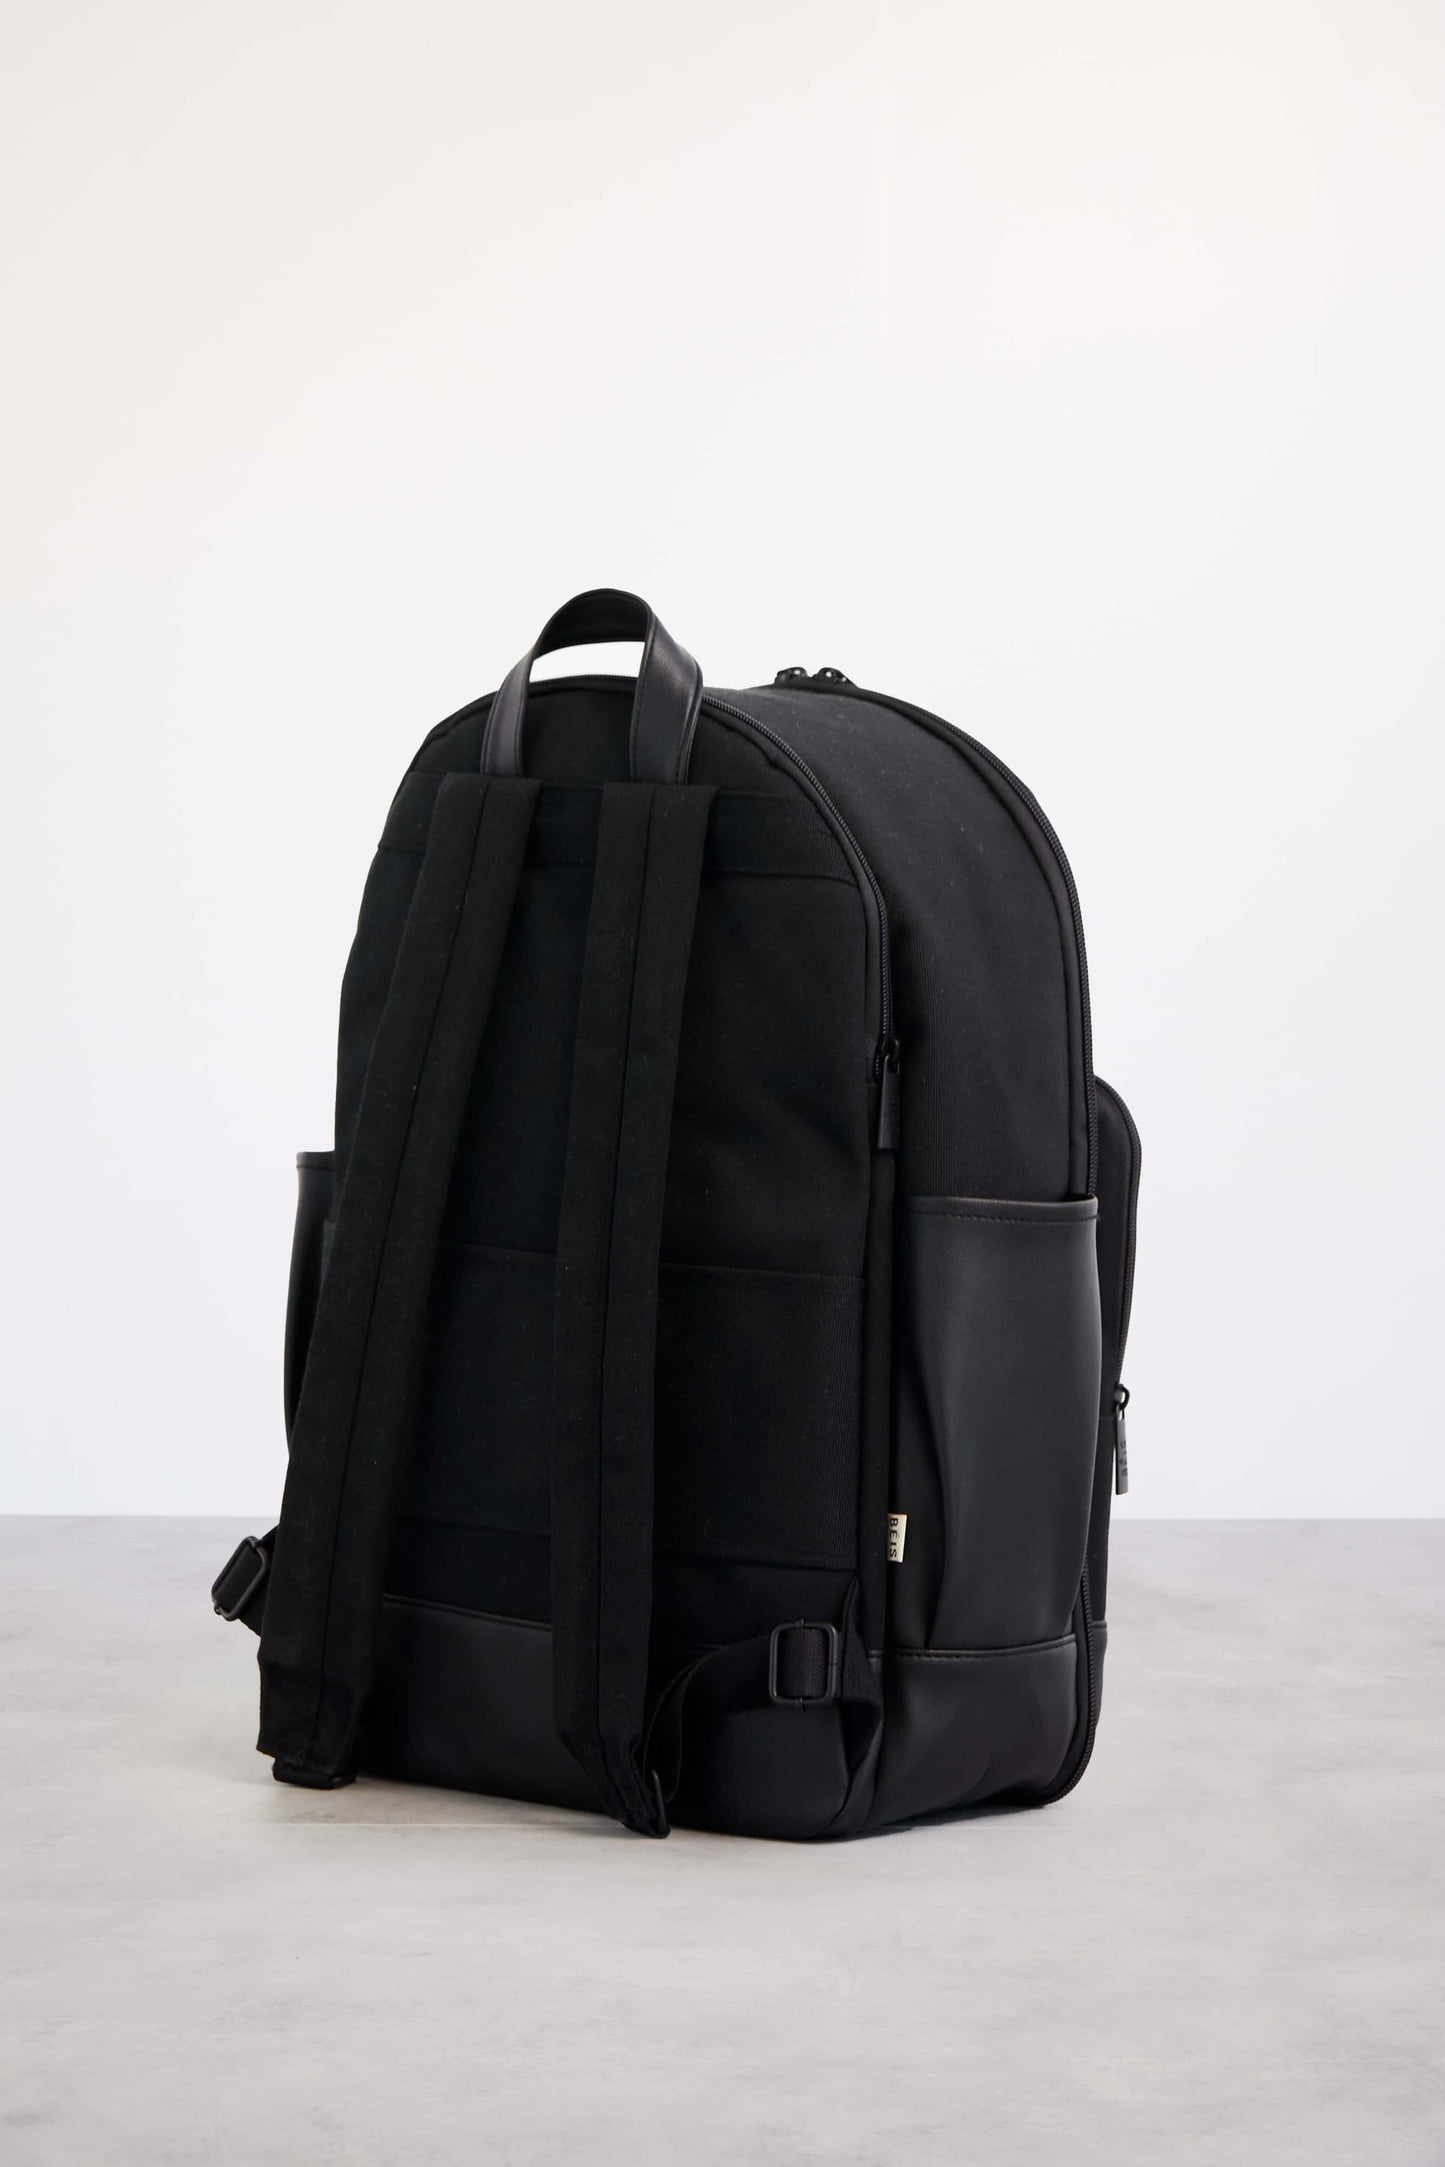 Backpack Black Back Side